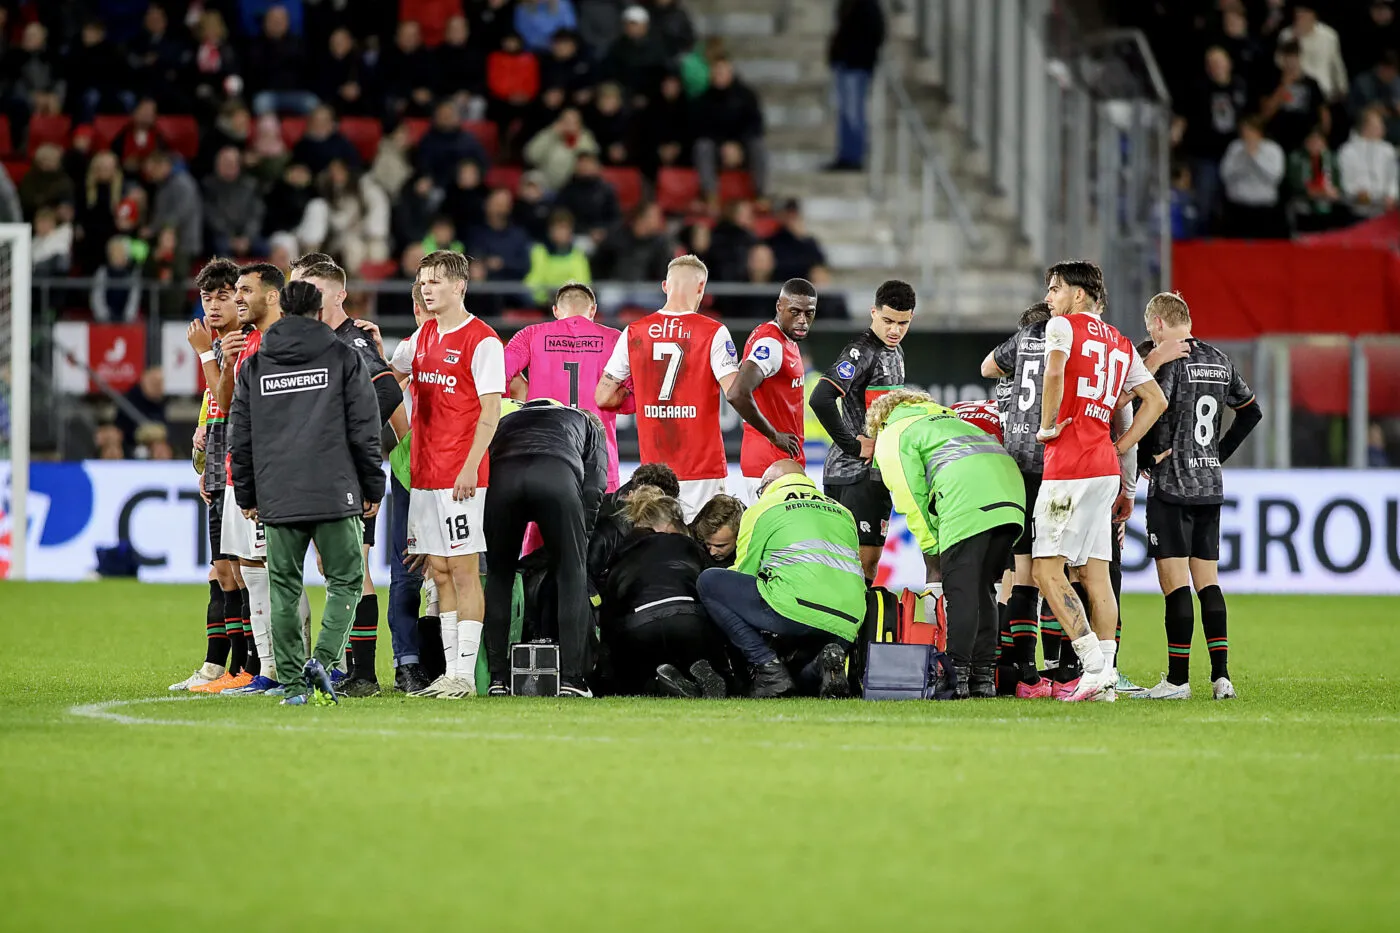 Bas Dost victime d'un malaise, le match entre Alkmaar et Nimègue interrompu